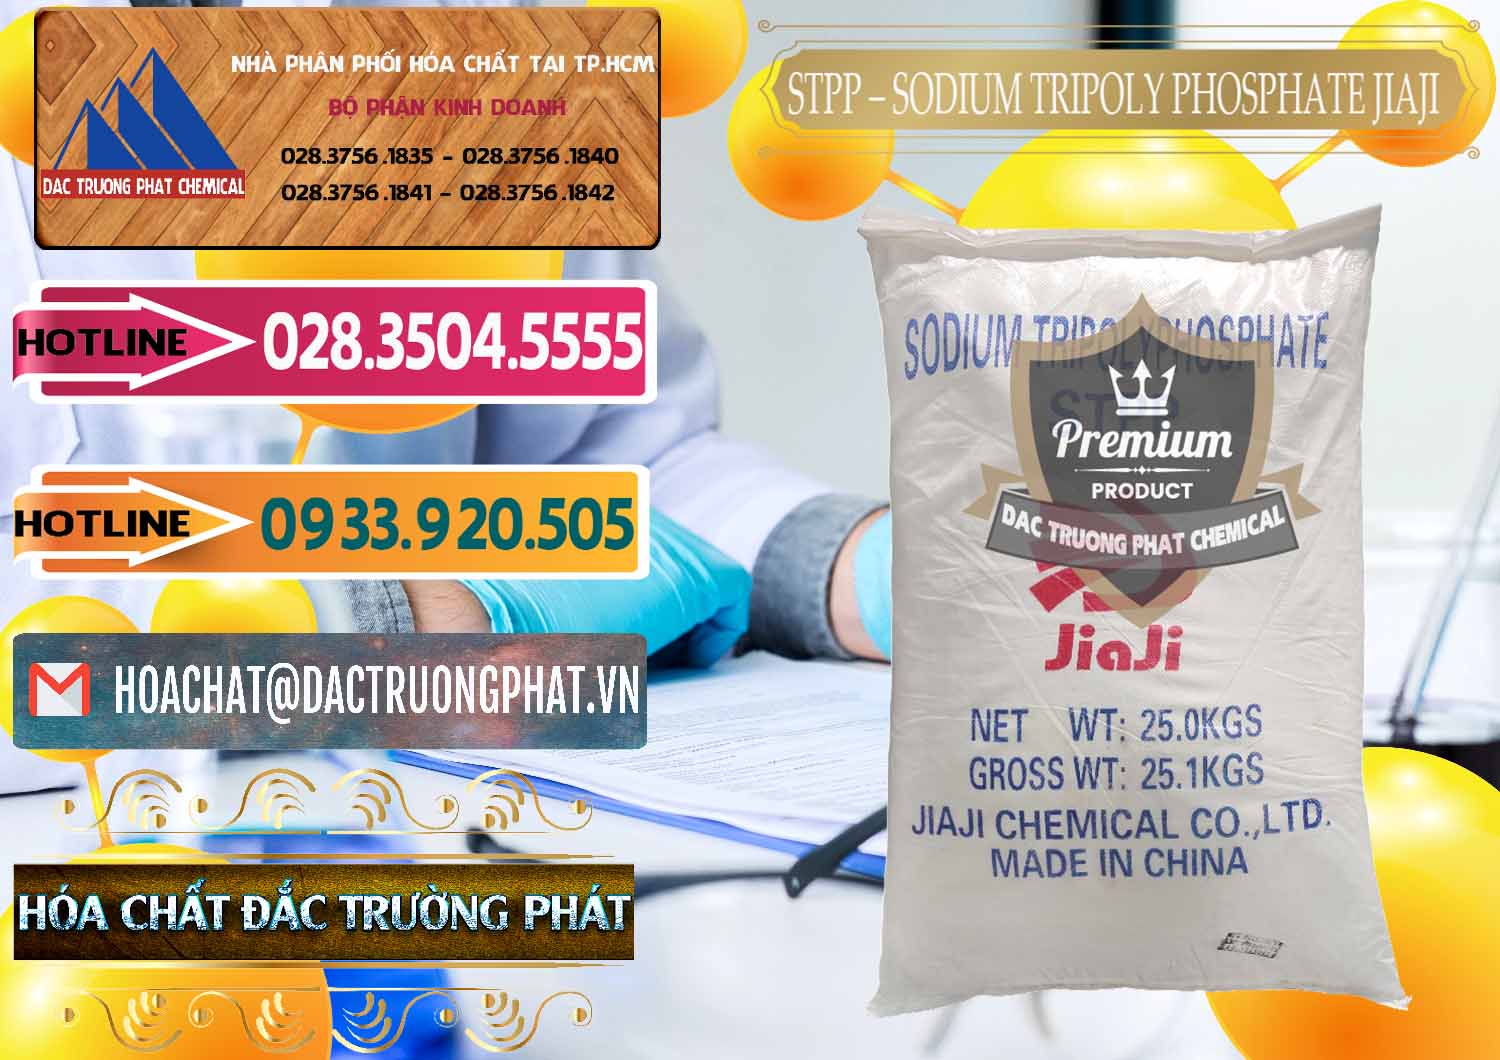 Nơi chuyên bán ( cung cấp ) Sodium Tripoly Phosphate - STPP Jiaji Trung Quốc China - 0154 - Cty bán ( phân phối ) hóa chất tại TP.HCM - dactruongphat.vn